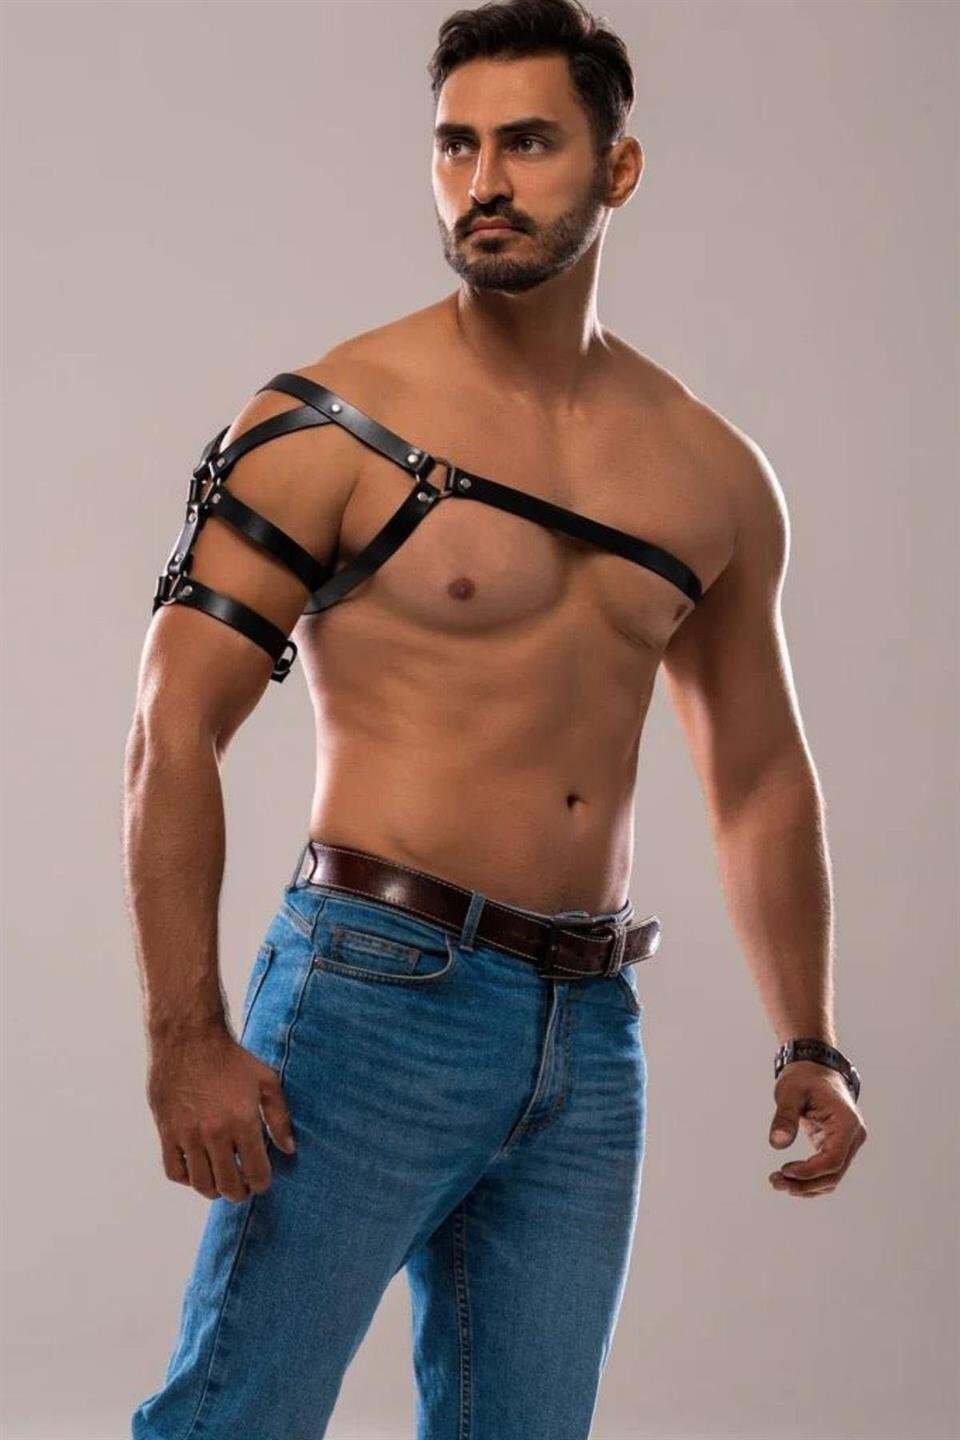 CLZ41 Tek Omuz Erkek Harness, Erkek Göğüs ve Omuz Harness - Ürün Rengi:Siyah